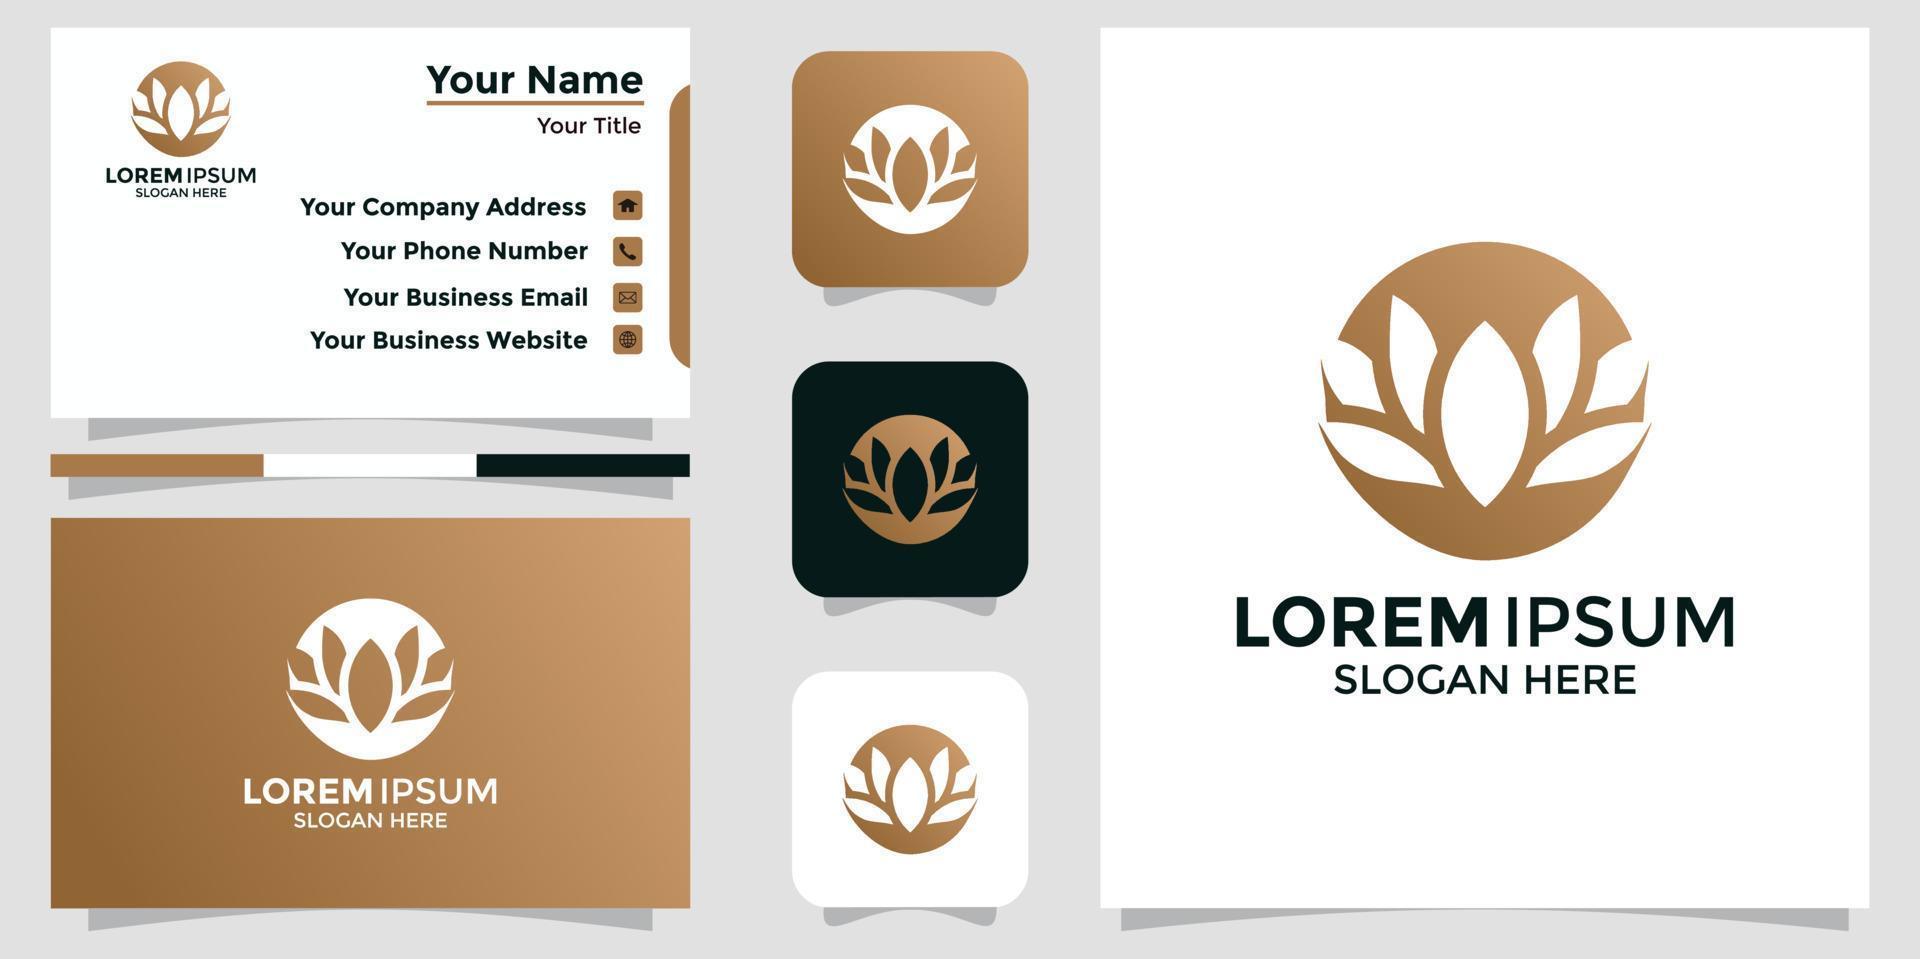 design de logotipo minimalista flor de lótus e cartão de marca vetor